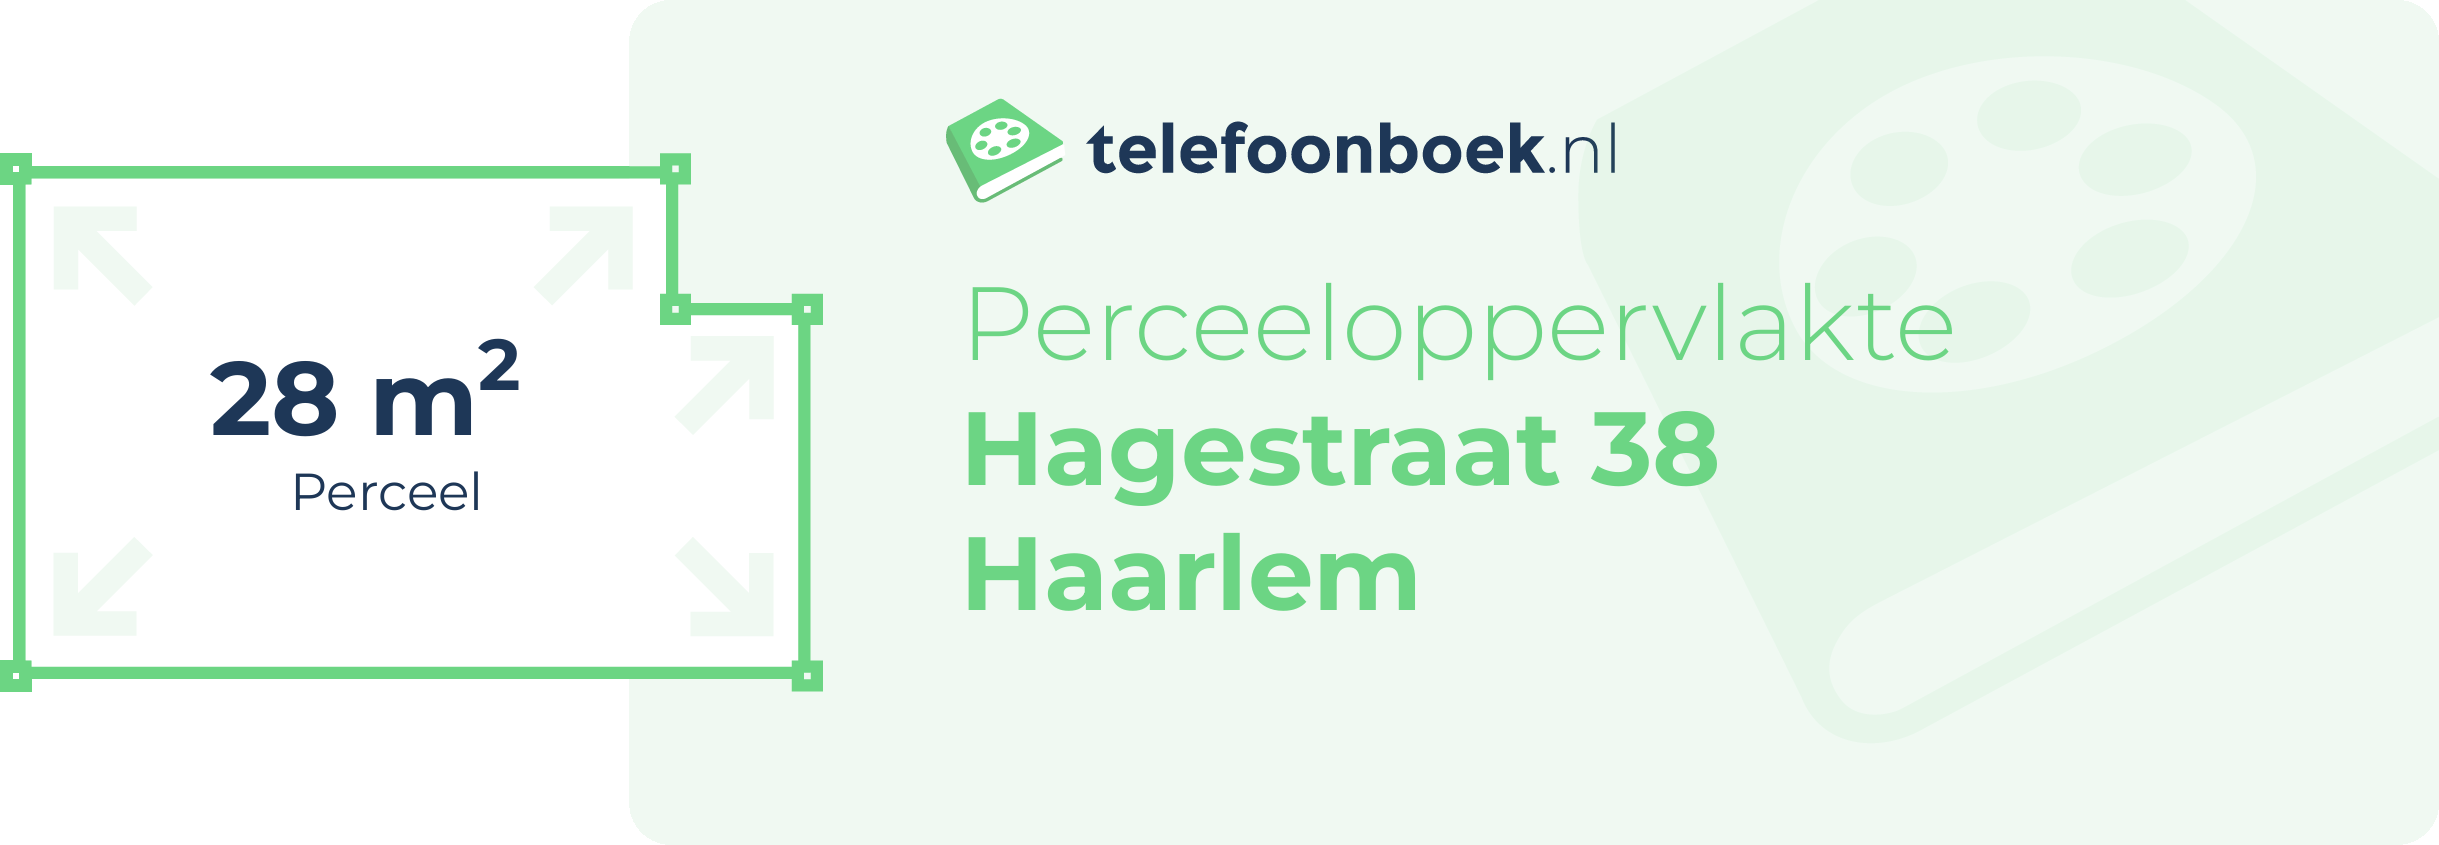 Perceeloppervlakte Hagestraat 38 Haarlem